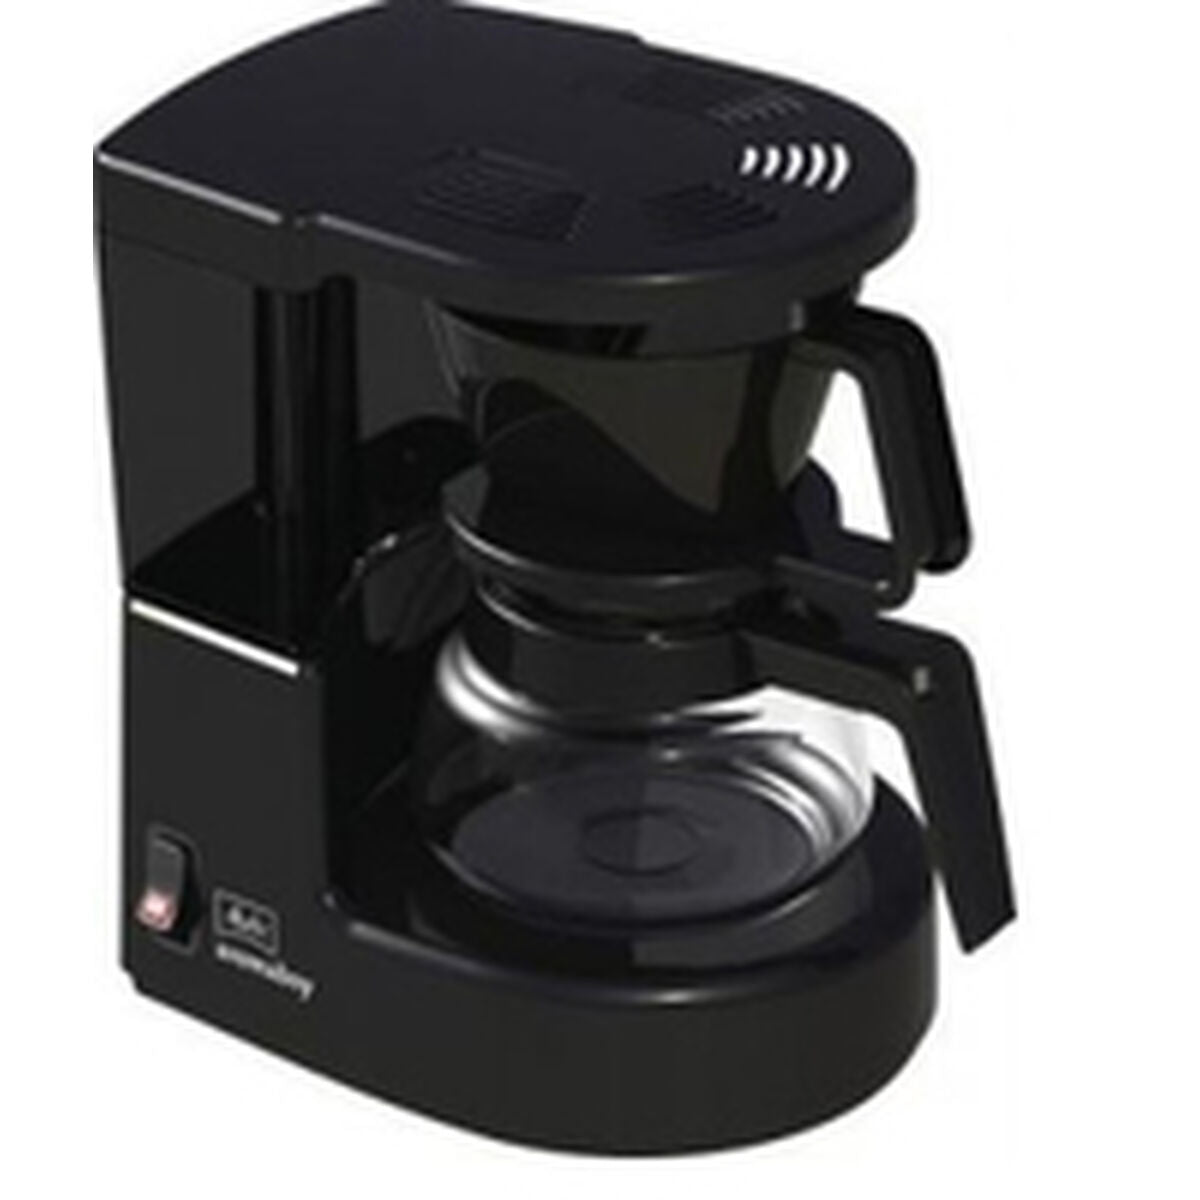 Drip Coffee Machine Melitta Aromaboy 500 W Nero 500 W